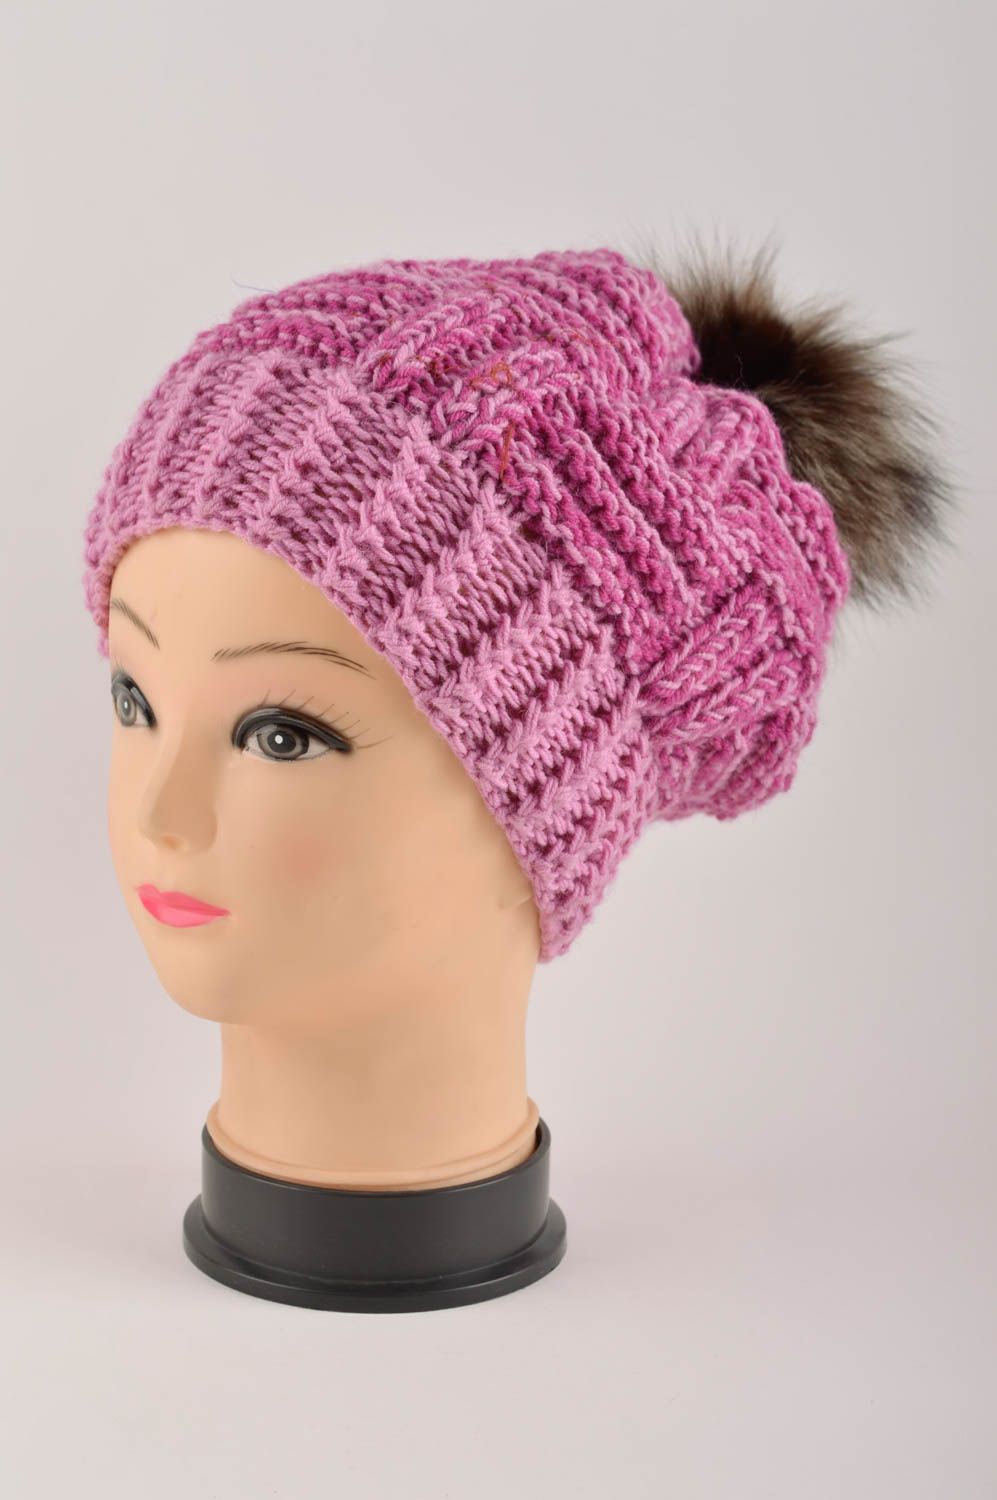 Зимняя шапка головной убор ручной работы шапка с мехом вязаная шапка розовая фото 2